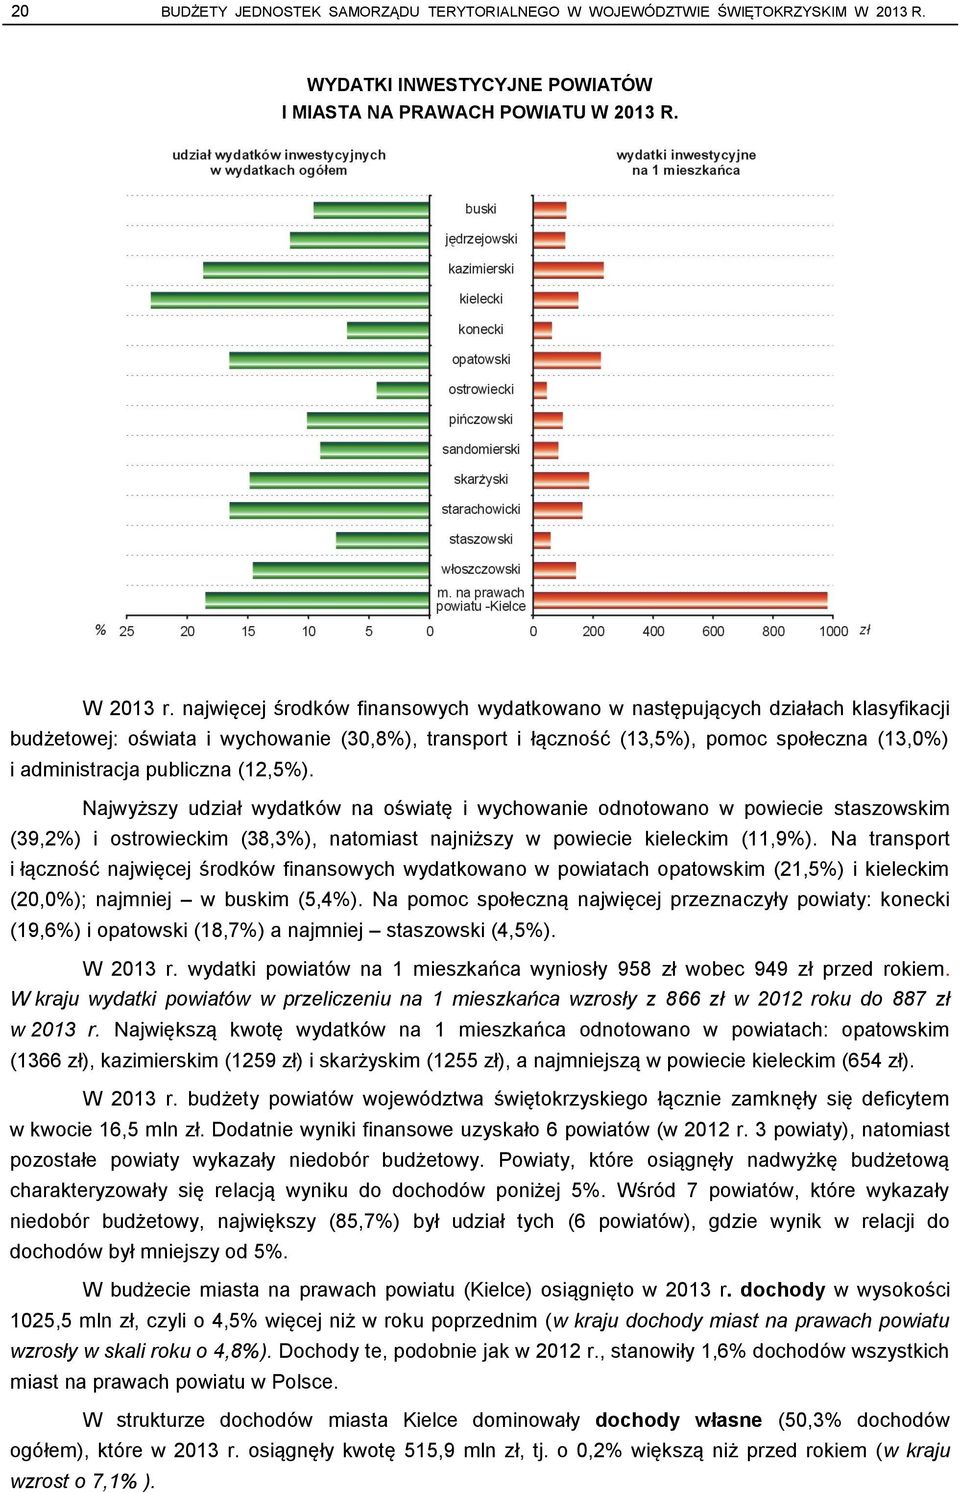 publiczna (12,5%). Najwyższy udział wydatków na oświatę i wychowanie odnotowano w powiecie staszowskim (39,2%) i ostrowieckim (38,3%), natomiast najniższy w powiecie kieleckim (11,9%).